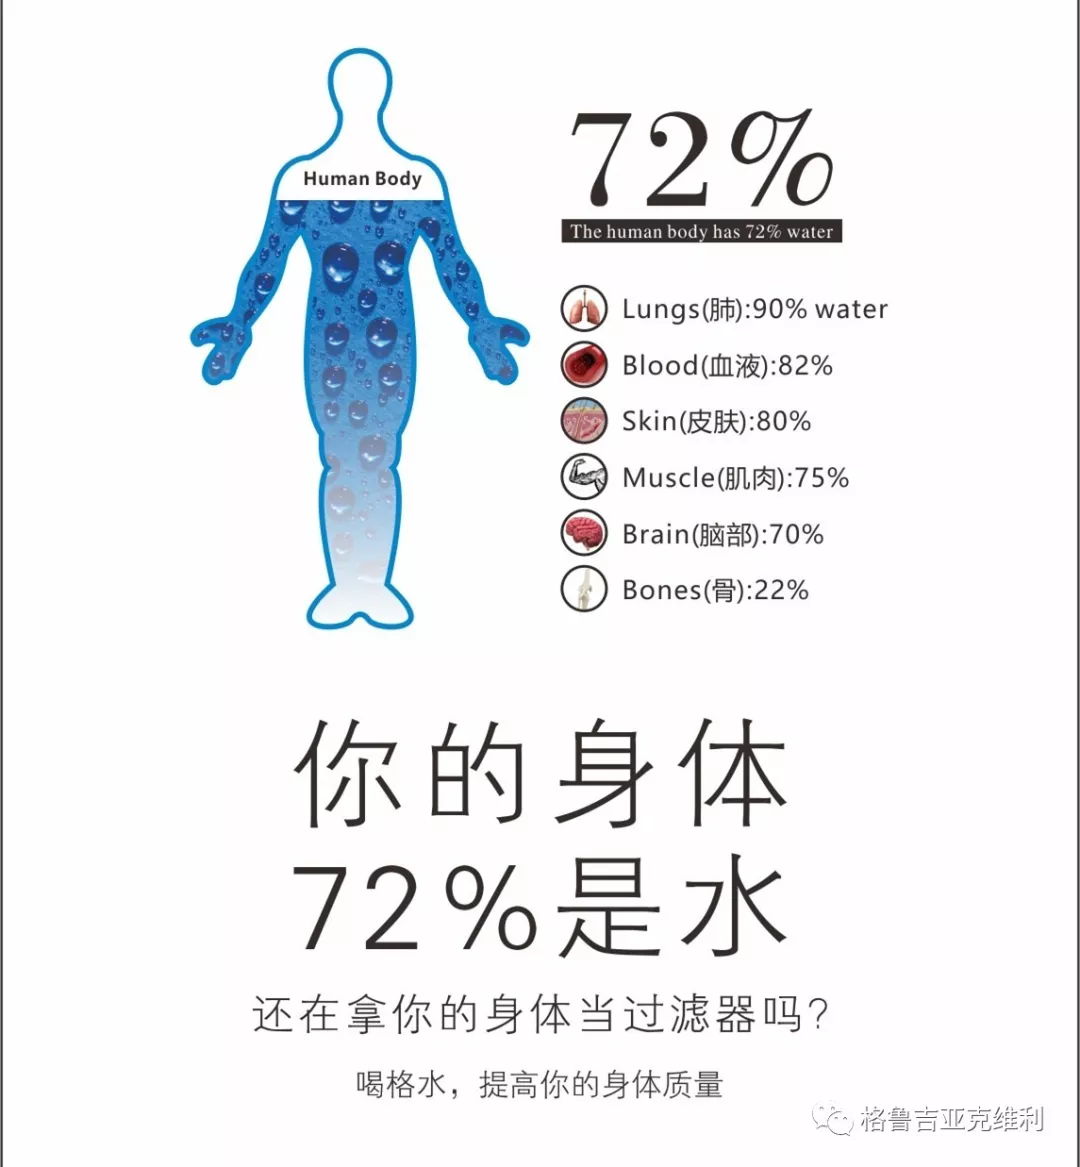 占成人体重的60-70%,而血液中含水量约达80%以上,所以水是构成人体的